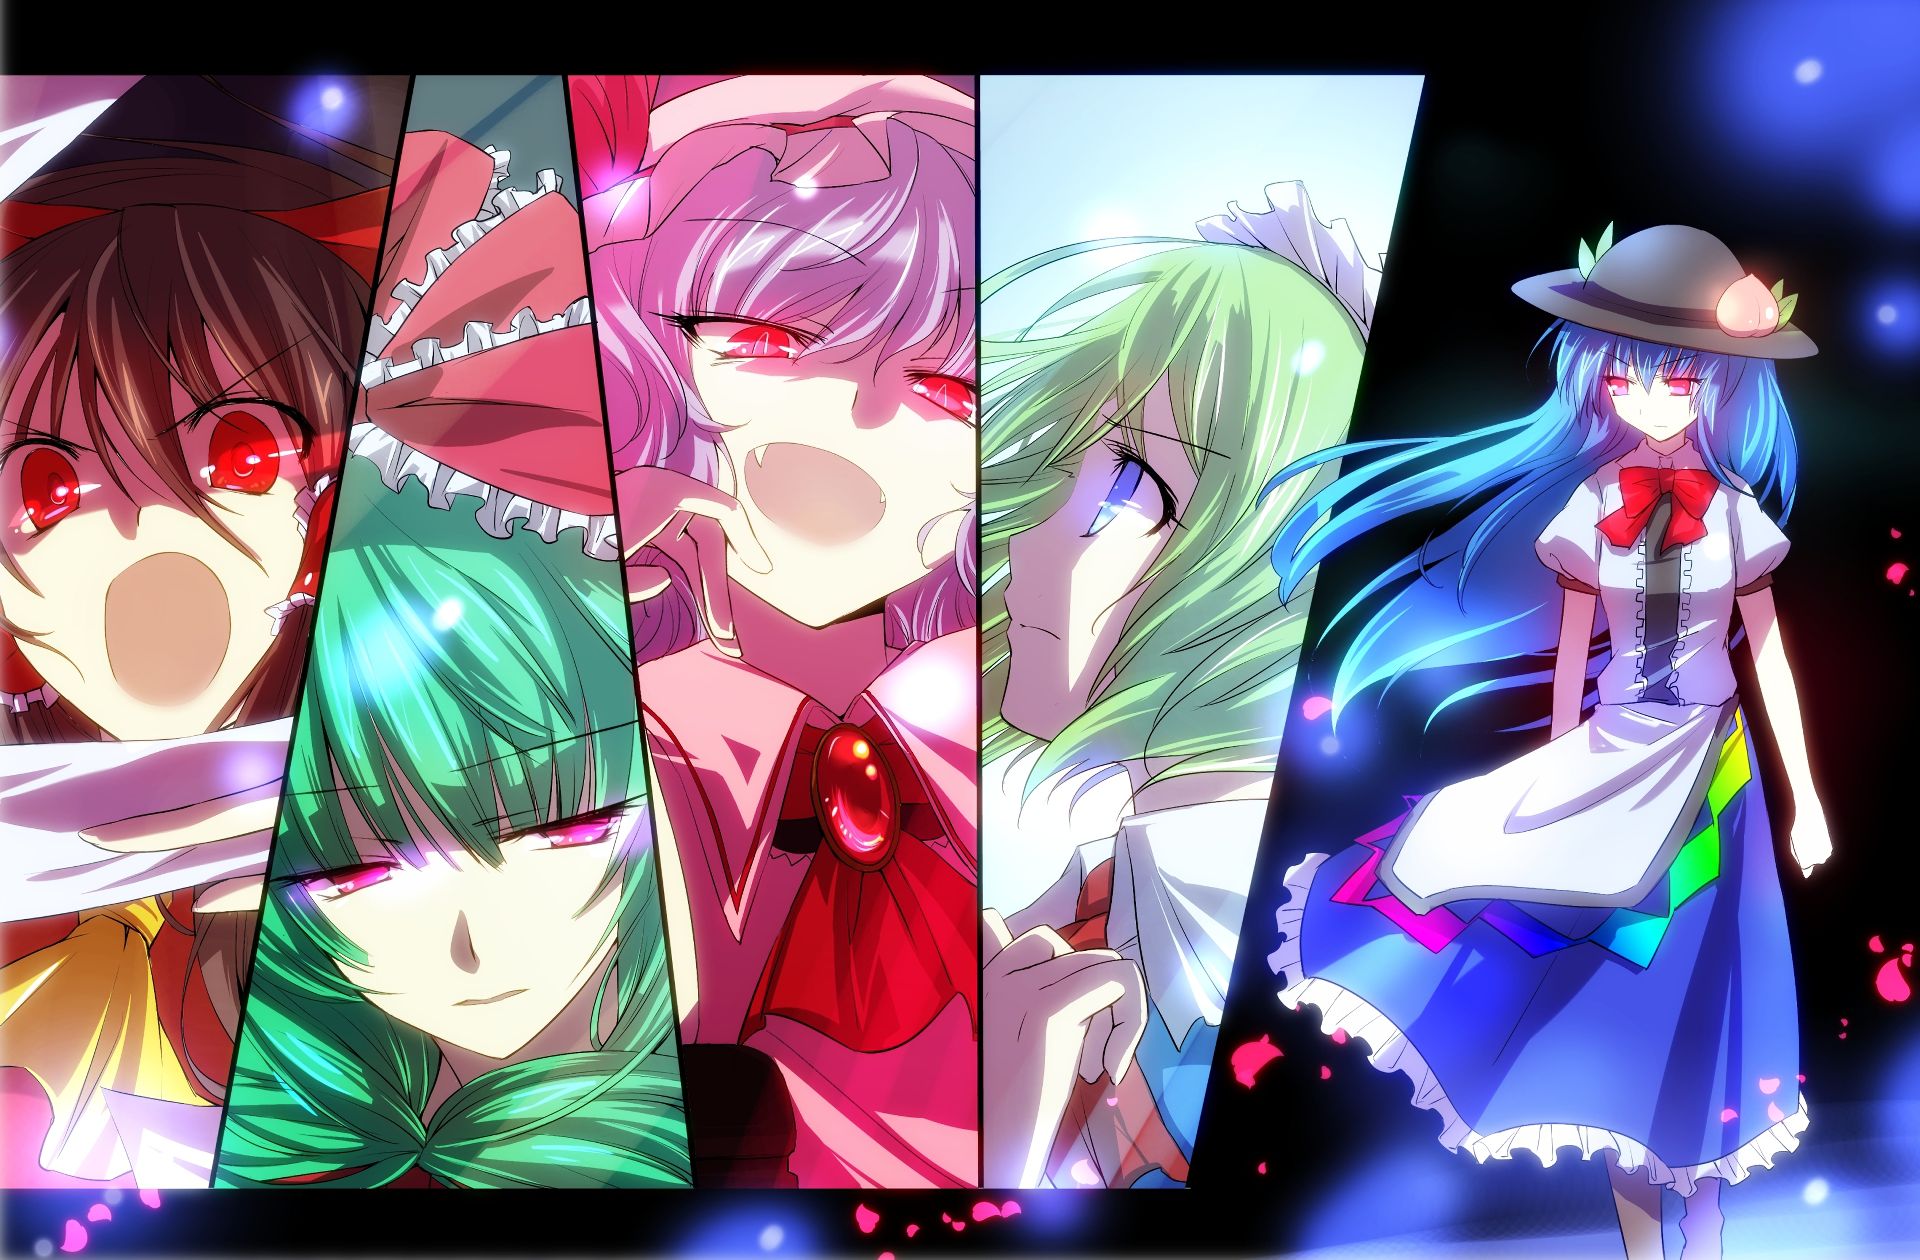 Descarga gratuita de fondo de pantalla para móvil de Animado, Remilia Escarlata, Touhou, Reimu Hakurei, Tenshi Hinanaui, Hina Kagiyama, Ruukoto (Touhou).